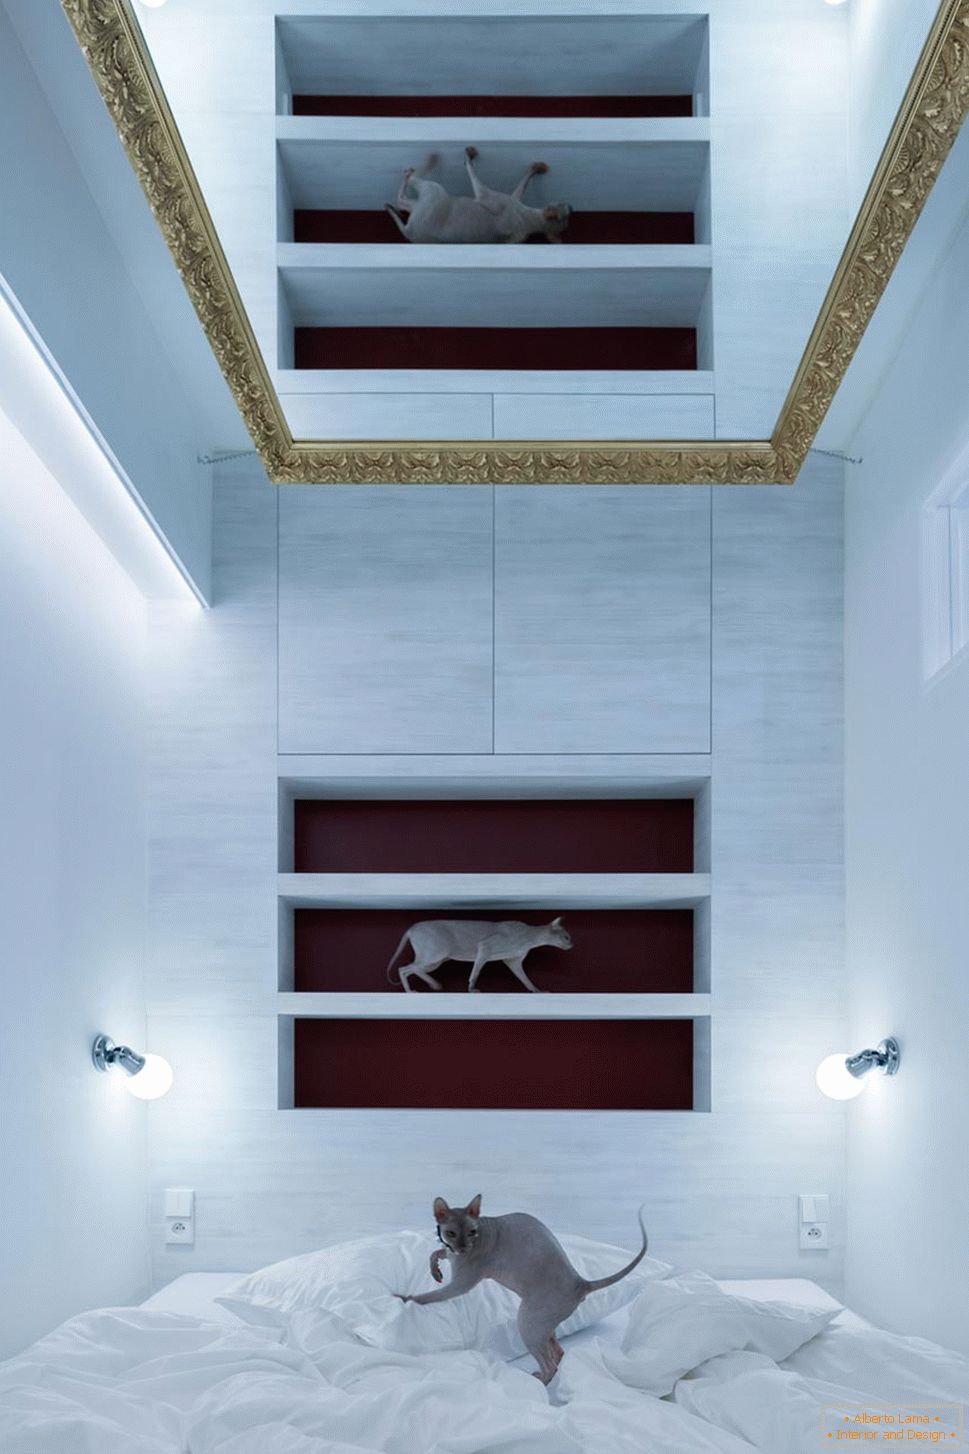 Diseño moderno de un pequeño apartamento - gatos en el interior